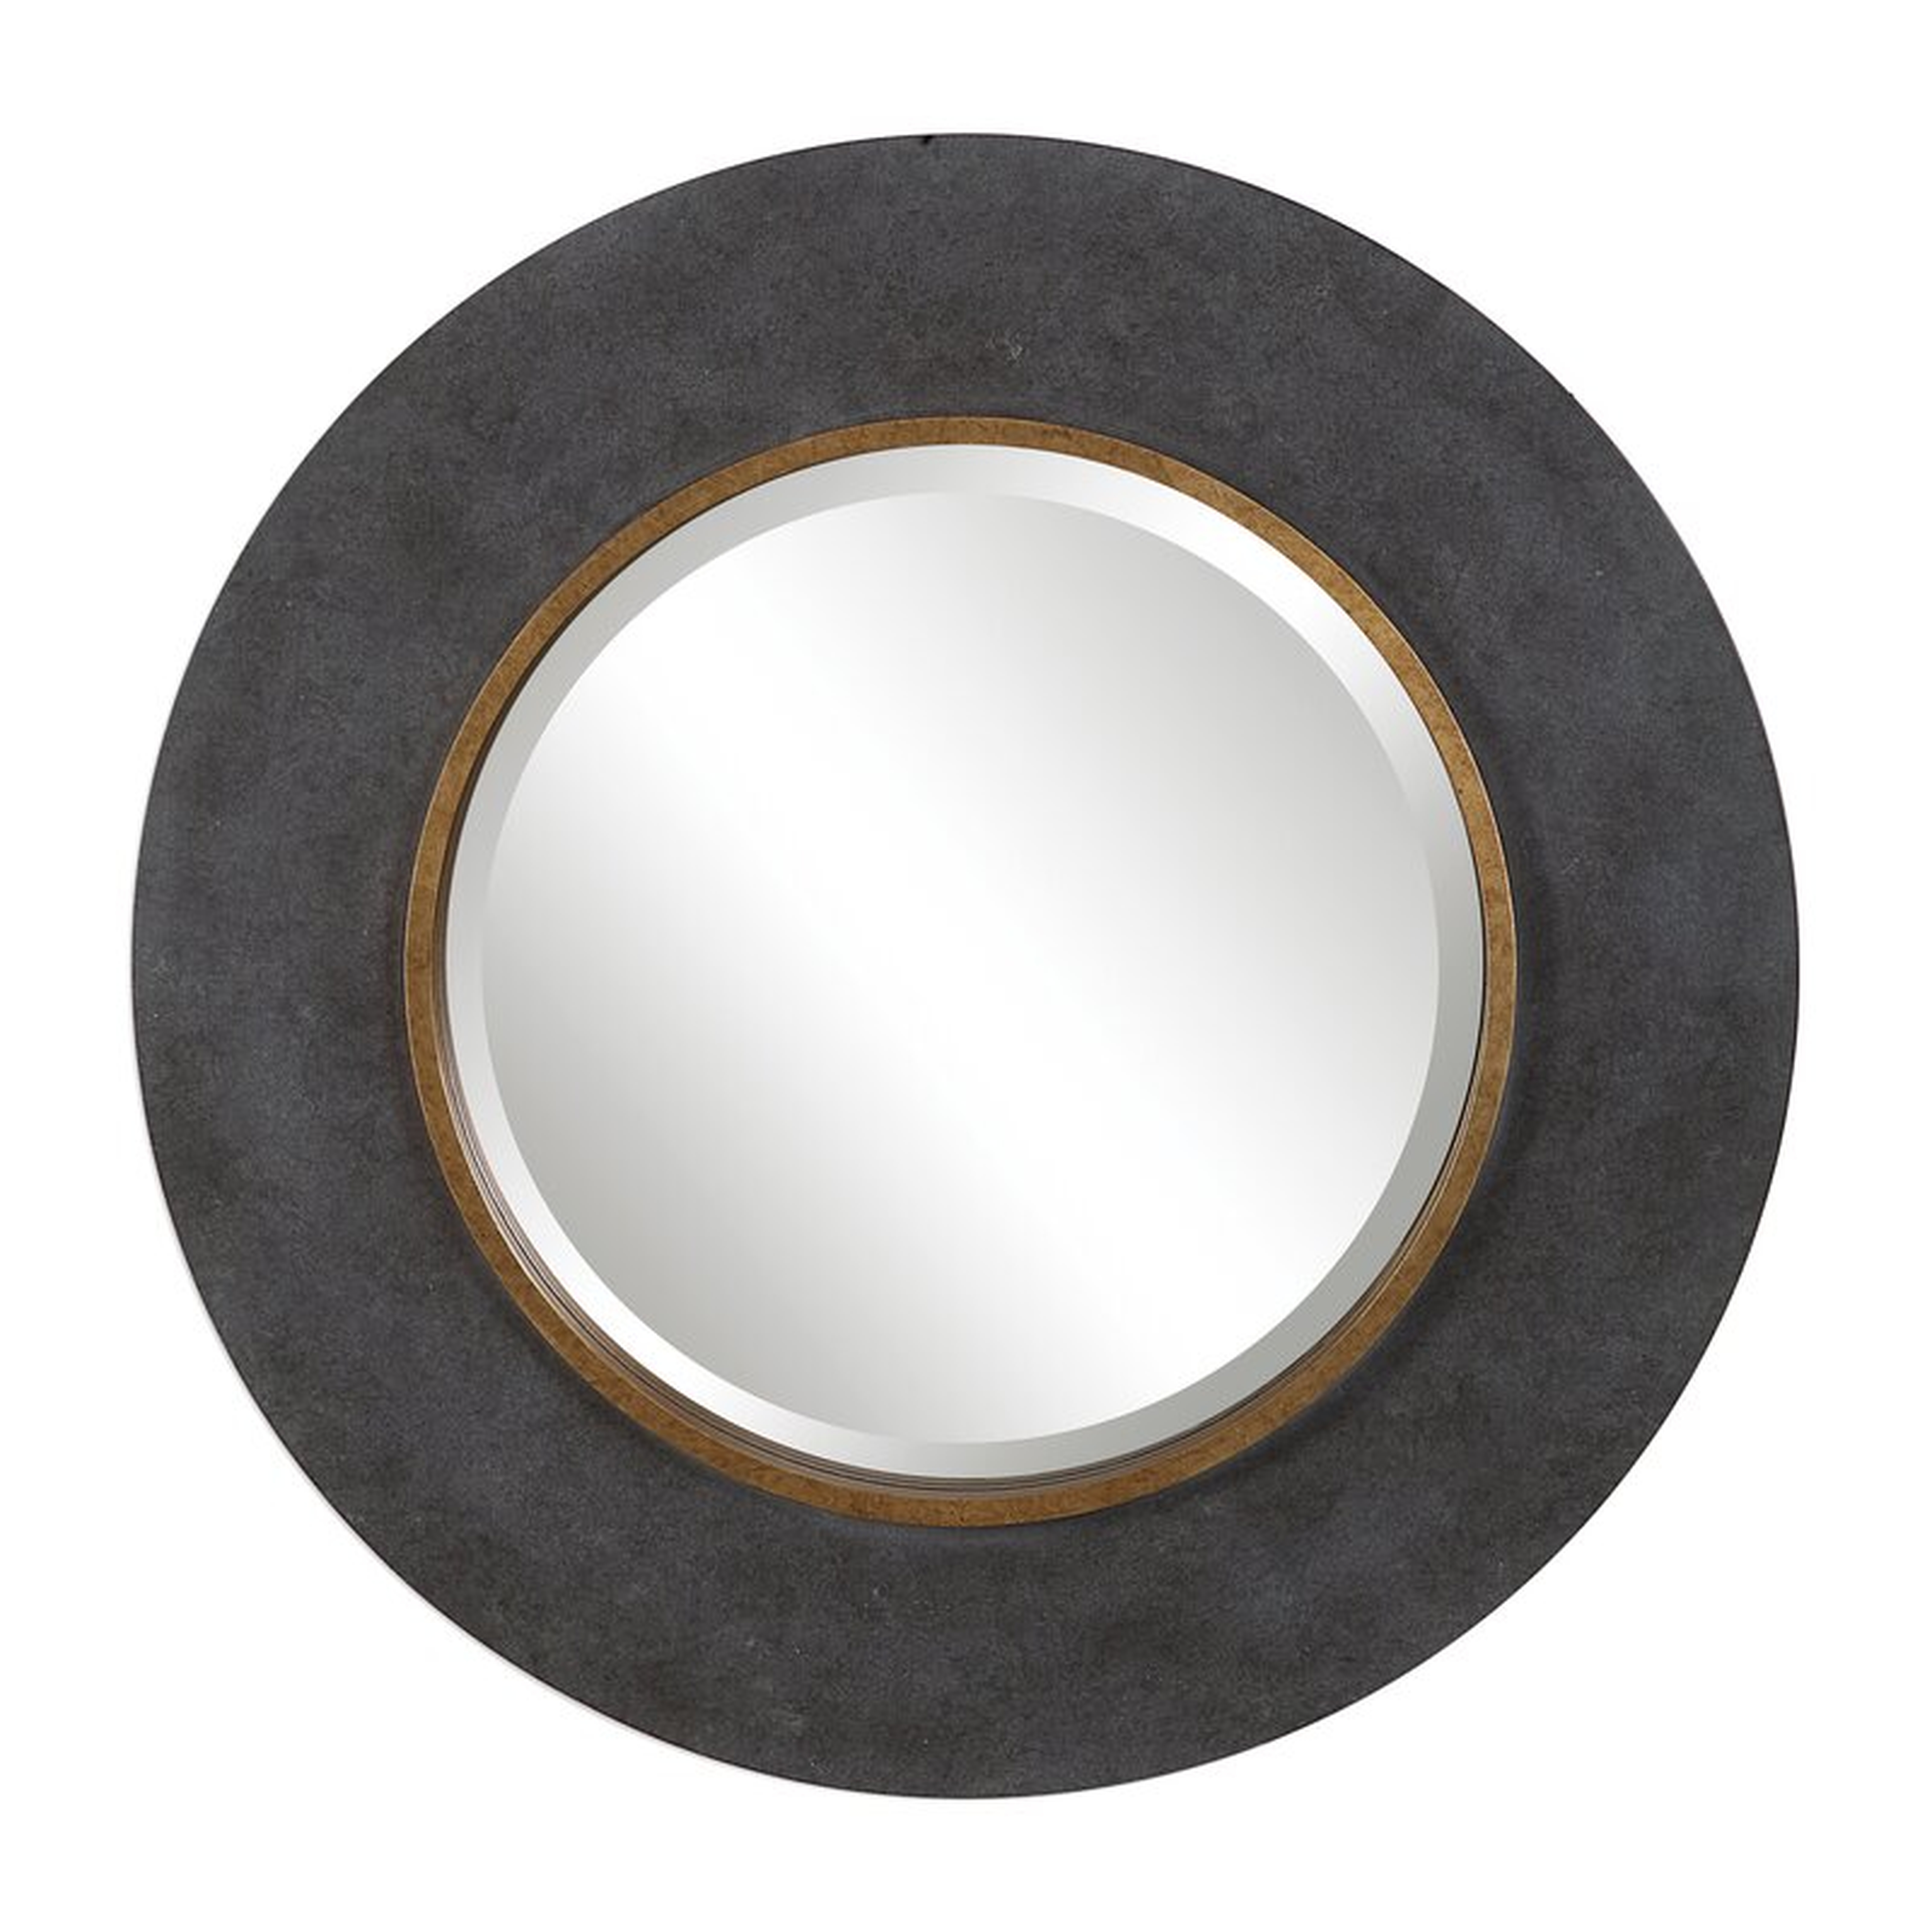 Zena Round Beveled/Distressed Accent Mirror - Wayfair